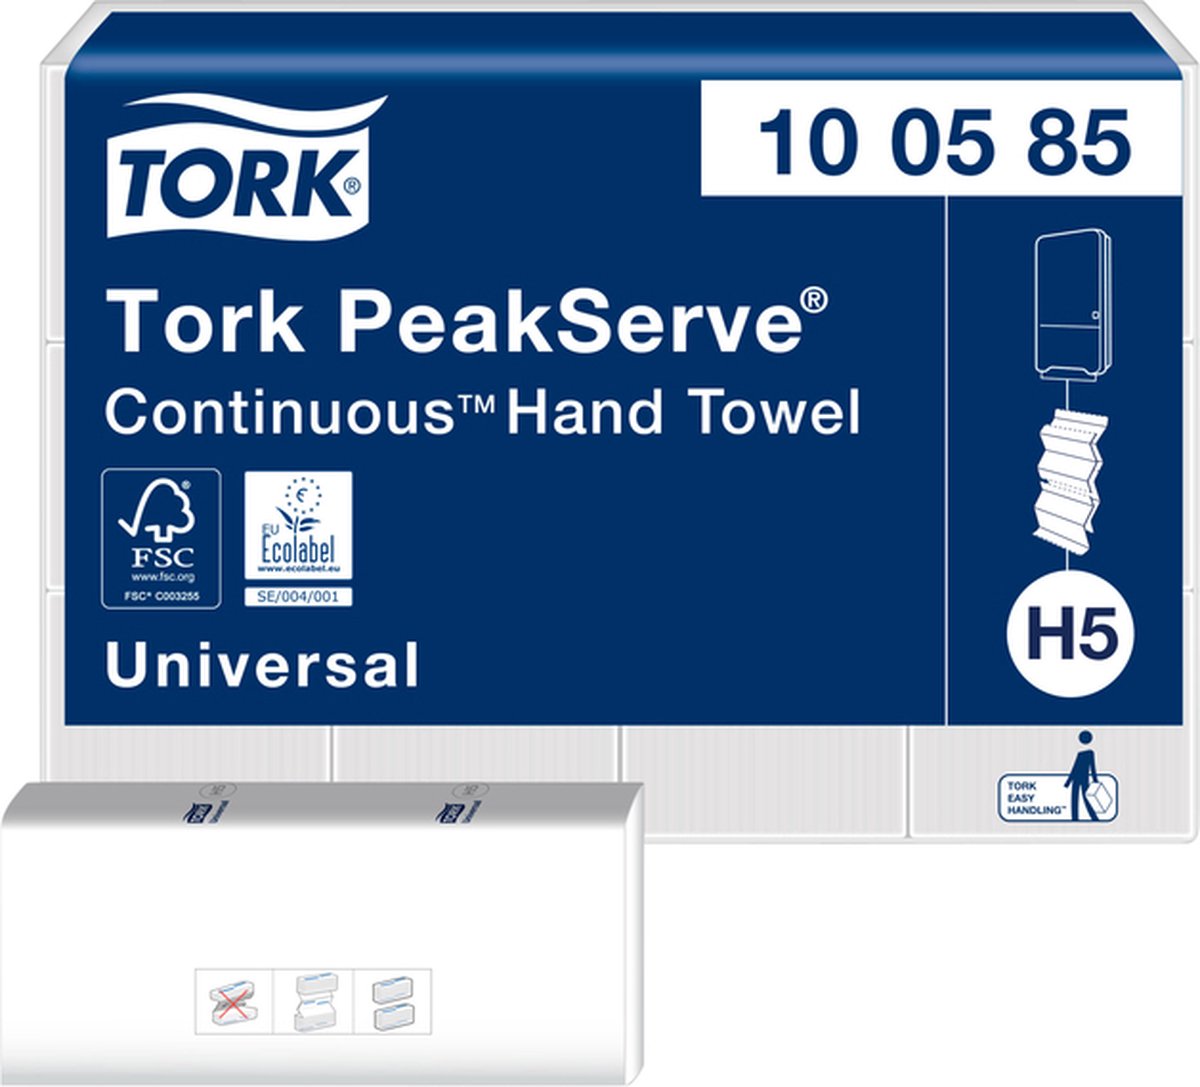 Tork Handdoek PeakServe Continu H5 universal gecomprimeerd wit 100585 12 stuks 12 stuks